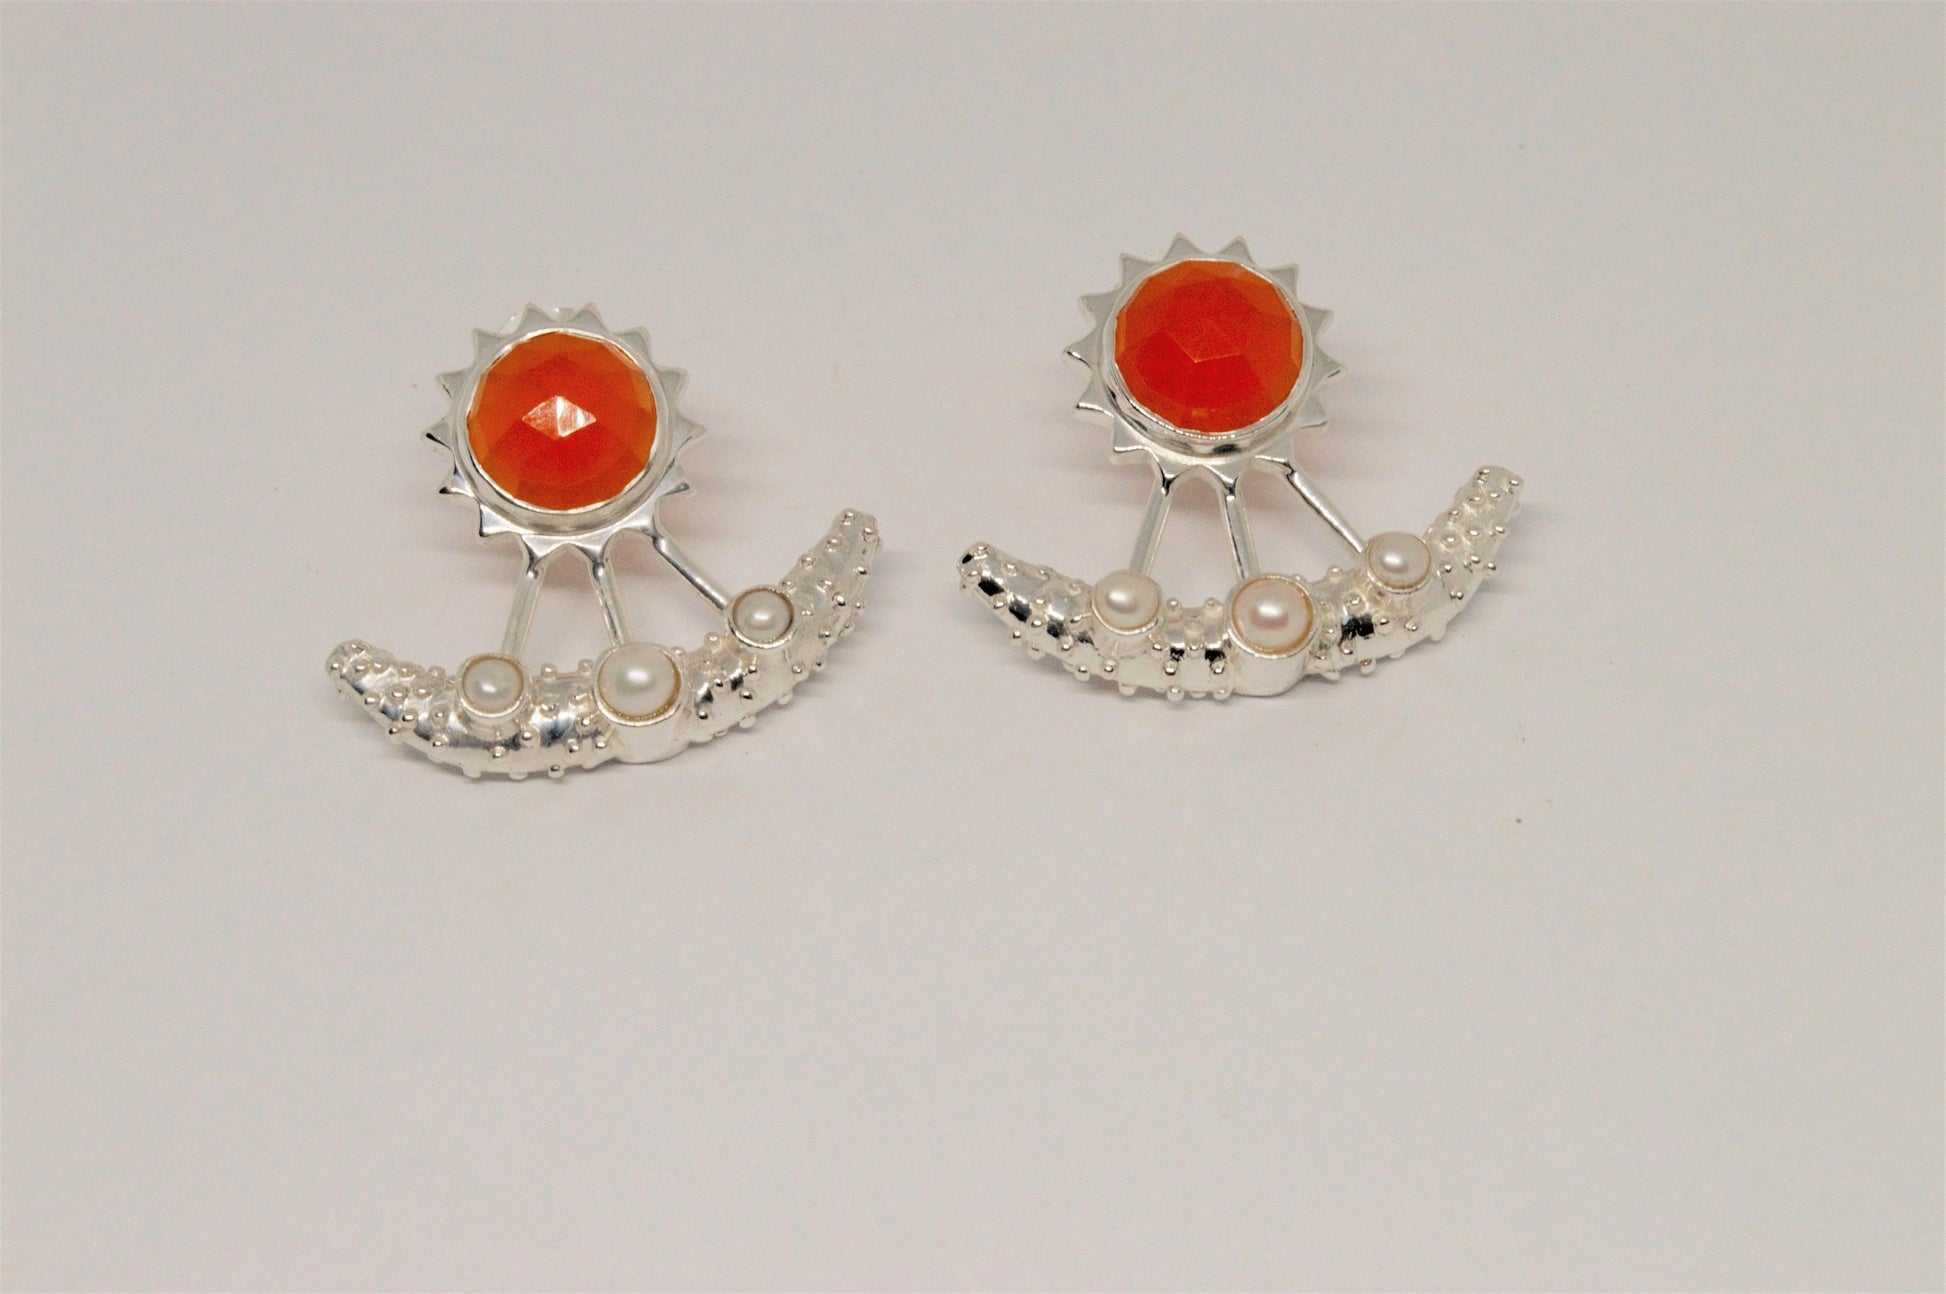 Carnelian, Pearl Earrings, Sterling Silver Indian Earrings, Unique Gemstone Earrings, June Birthstone, Pearl Jewelry, Gift For Her